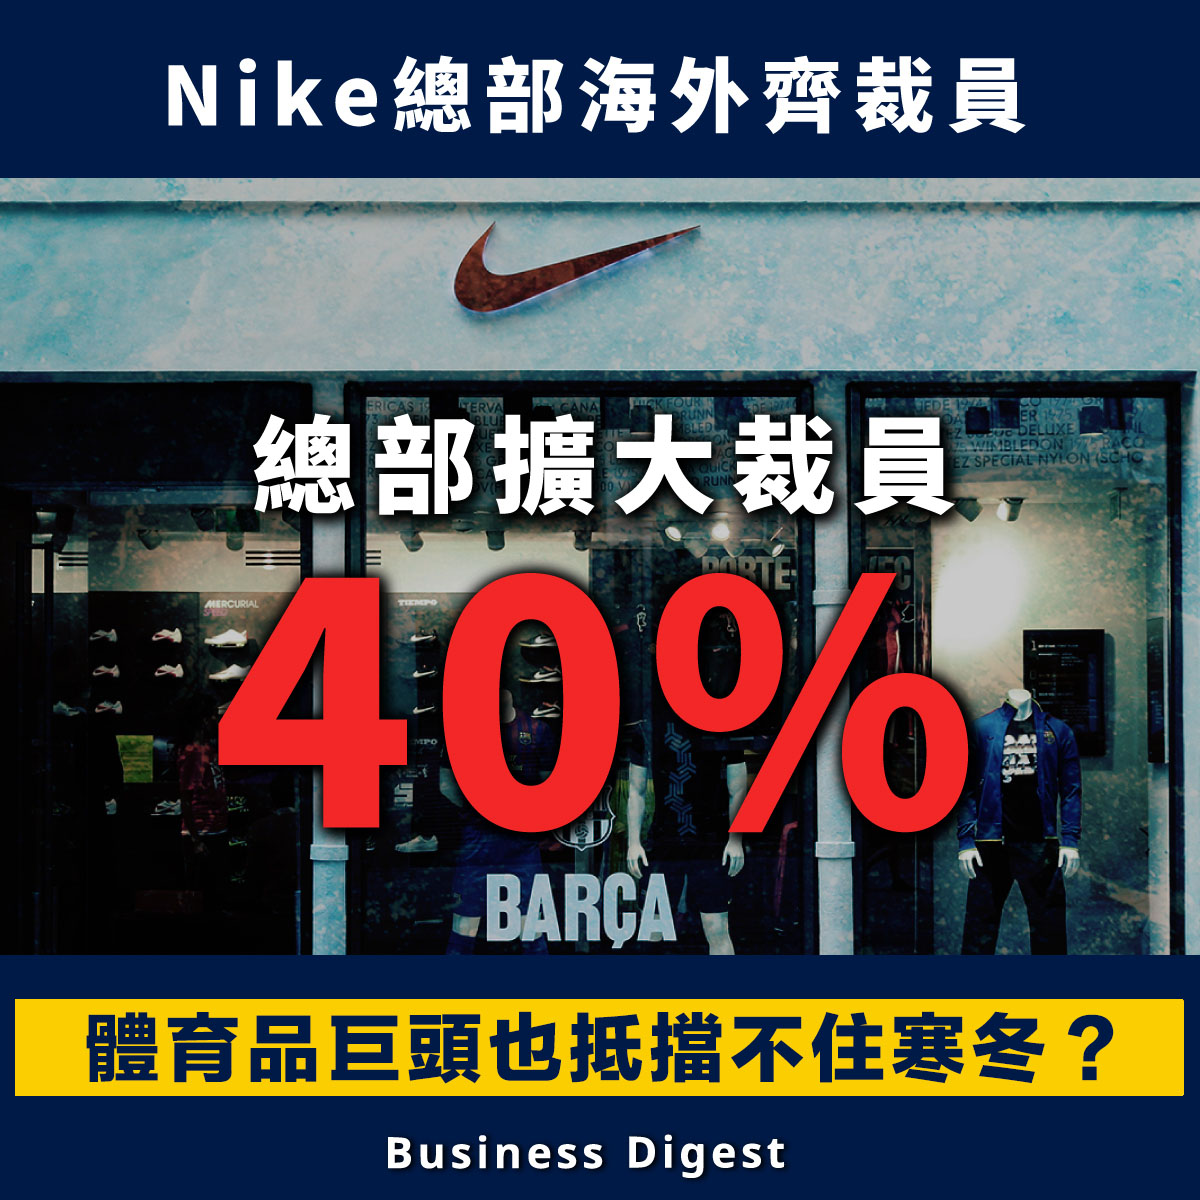 體育用品巨頭的Nike總部、海外齊裁員。Nike在近日提交的文件中顯示，該公司全球總部裁員約700人，較原計劃增加40%。